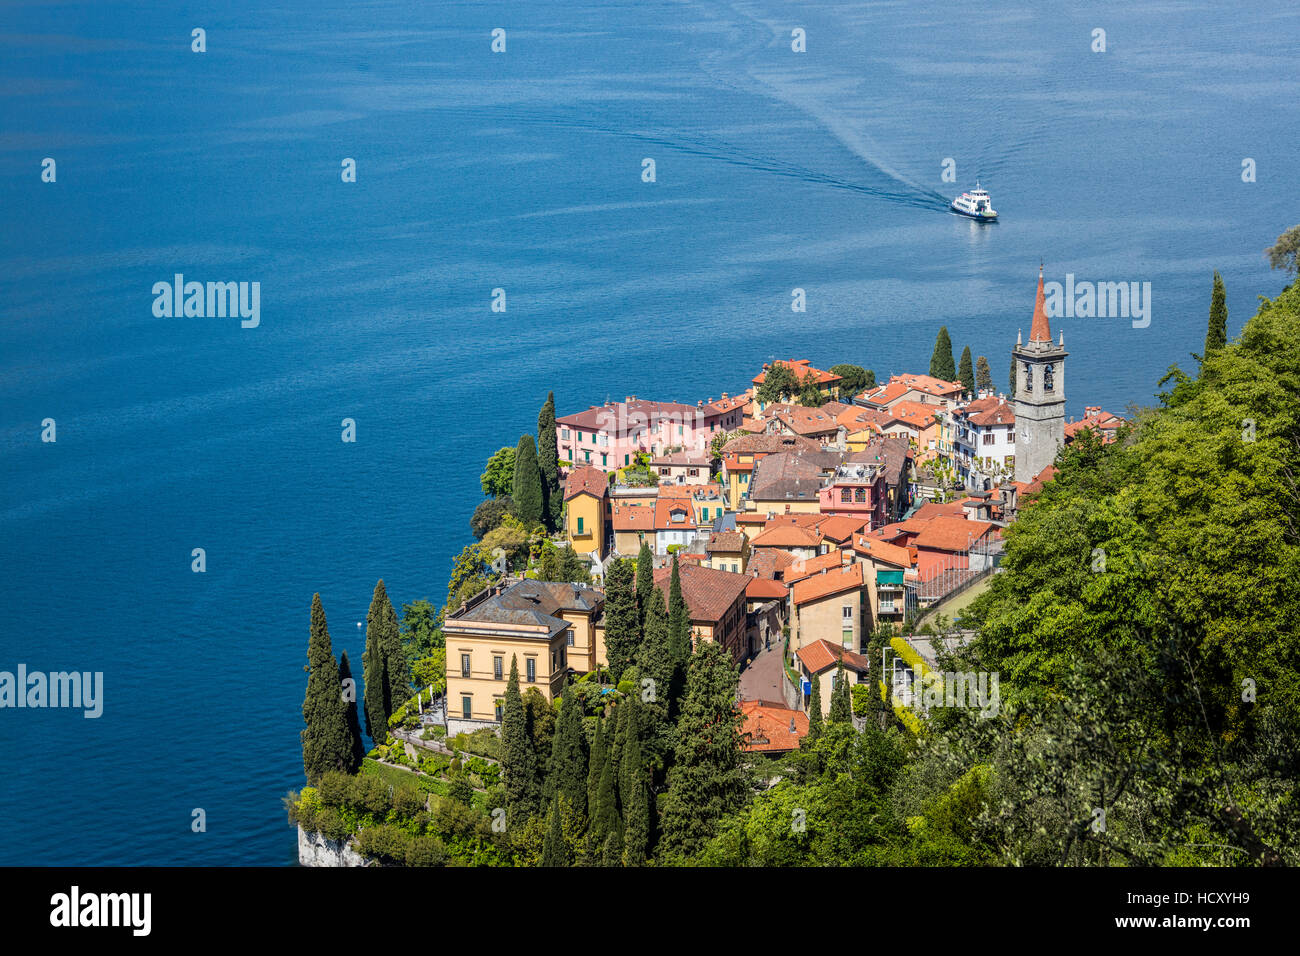 Il tipico villaggio di Varenna circondato dalle acque blu del lago di Como e giardini, provincia di Lecco, Lombardia, Italia Foto Stock